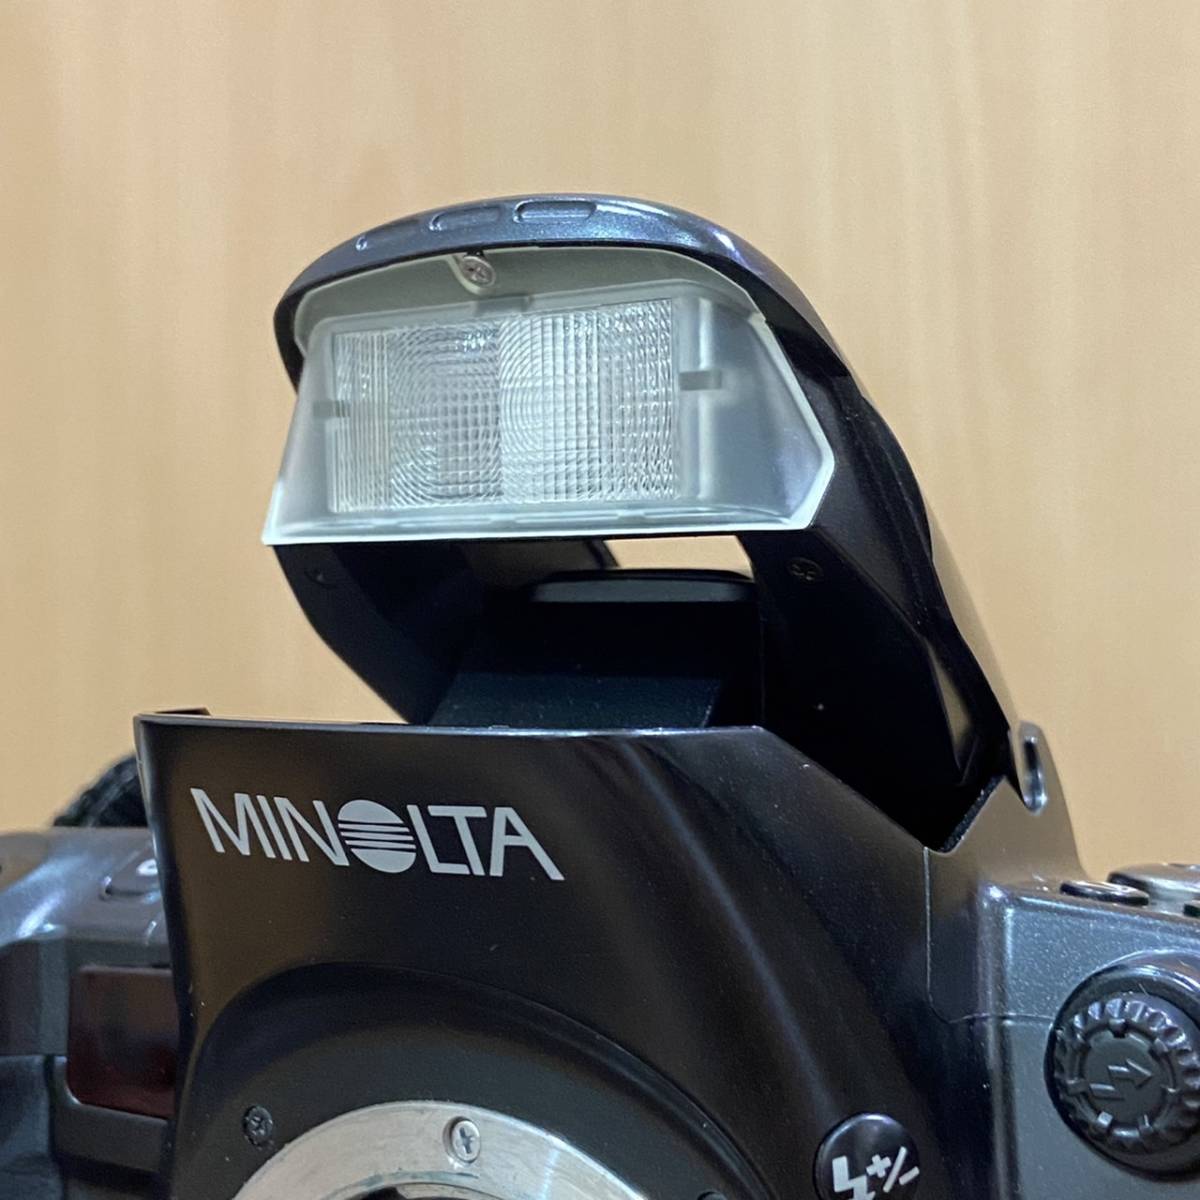 MINOLTA ミノルタ a 807 si 一眼レフ カメラ ブラック 黒 ボディ レンズ AF/M ZOOM 24-85mm 1:3.5 62Φ オートフォーカス 617